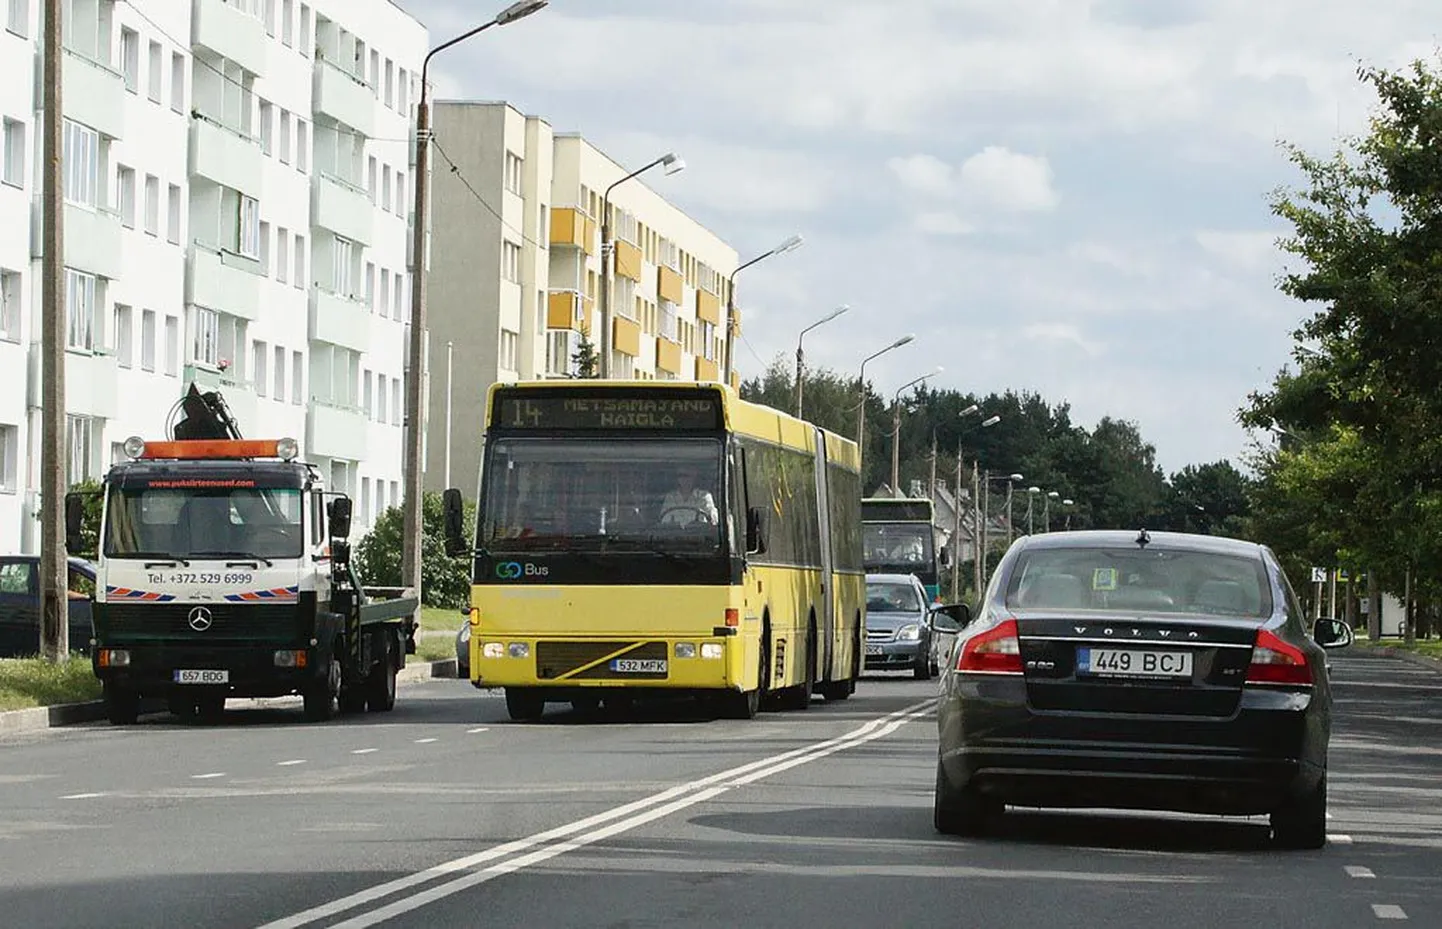 Bussiliiklusega tutvumiseks valis Toomas Kivimägi oma ametiauto, et kiiremini ühest kohast teise pääseda.